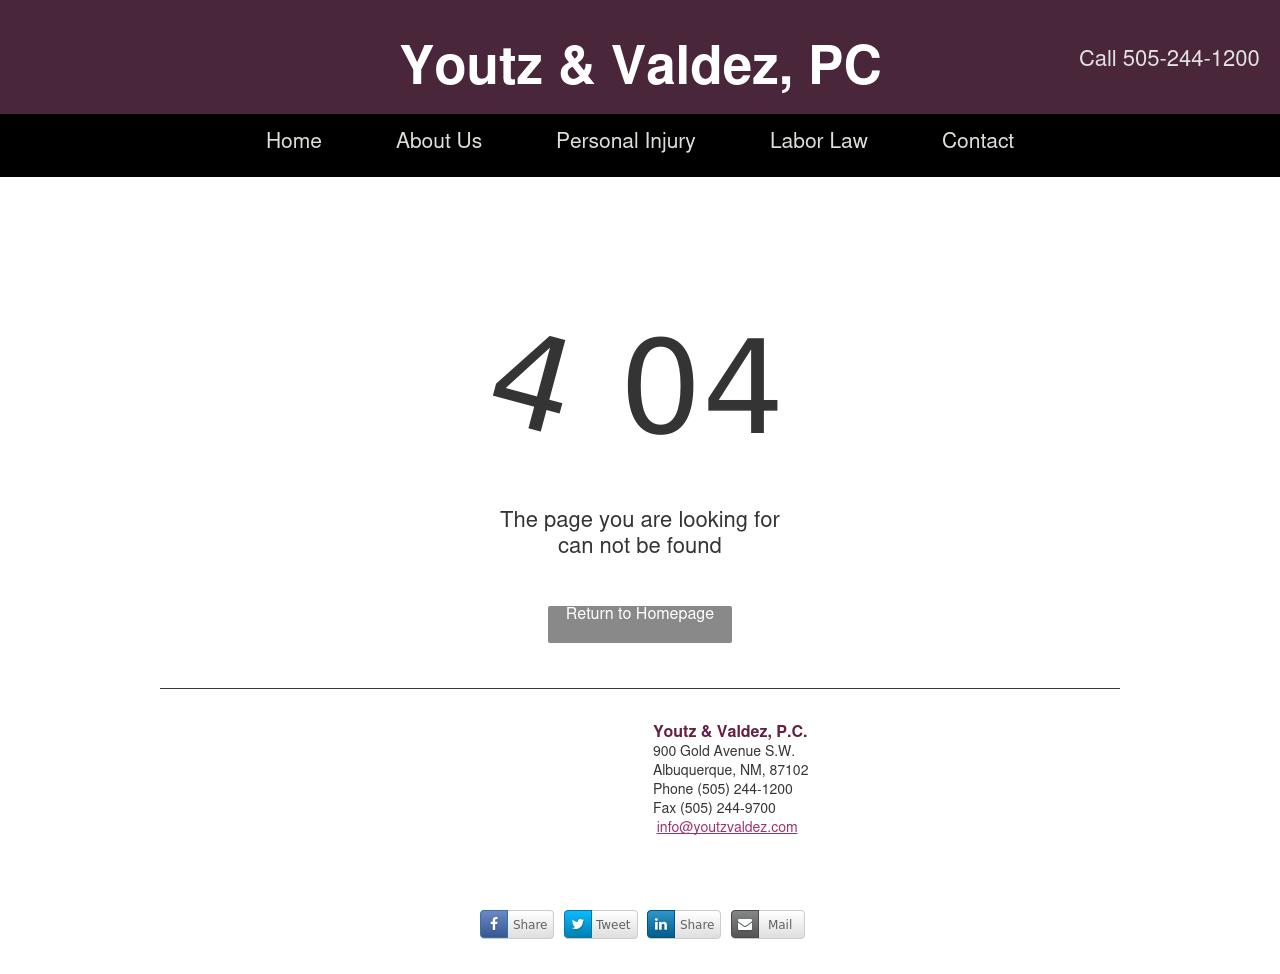 Youtz & Valdez, PC - Albuquerque NM Lawyers